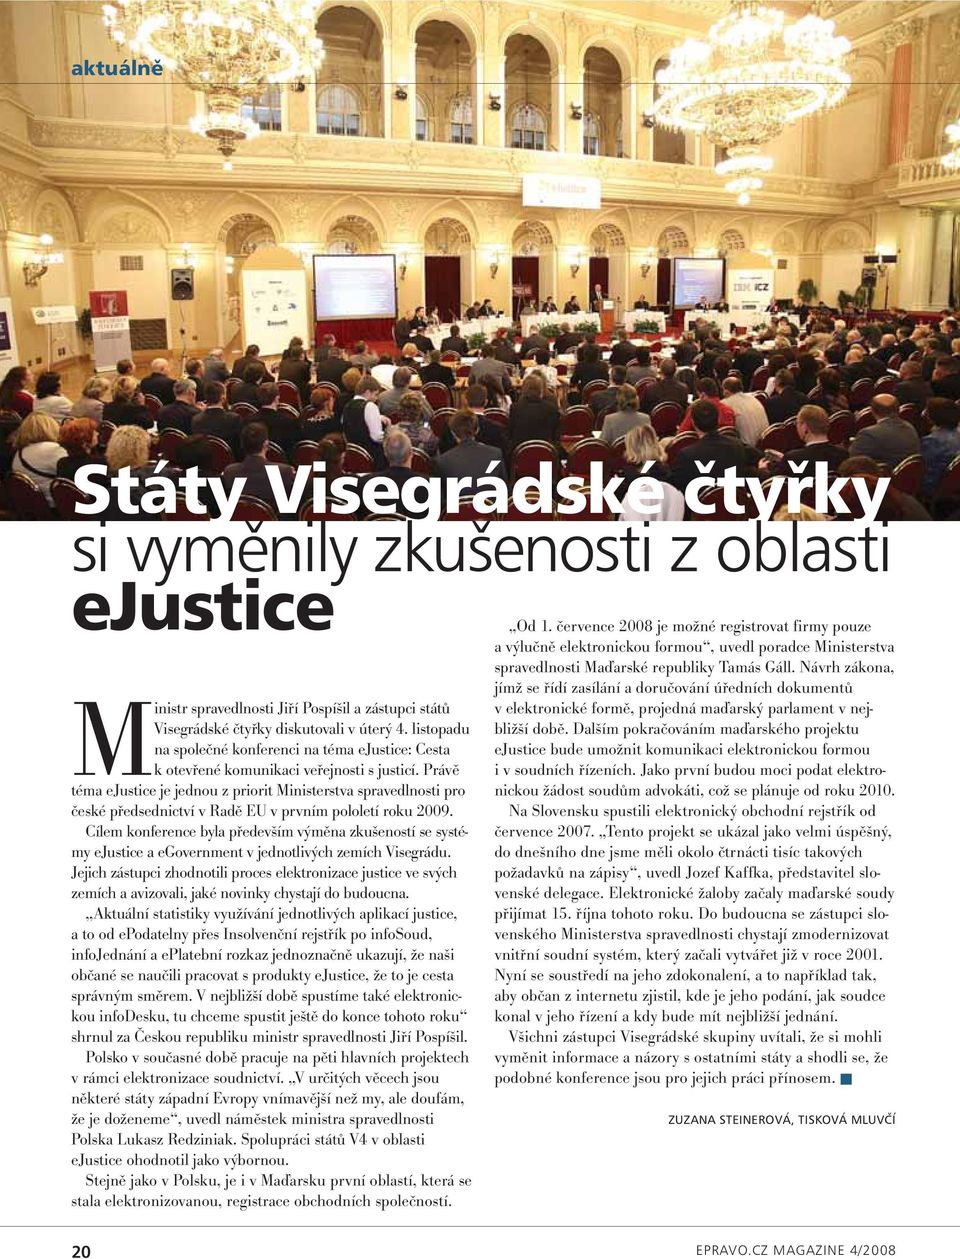 Právě téma ejustice je jednou z priorit Ministerstva spravedlnosti pro české předsednictví v Radě EU v prvním pololetí roku 2009.